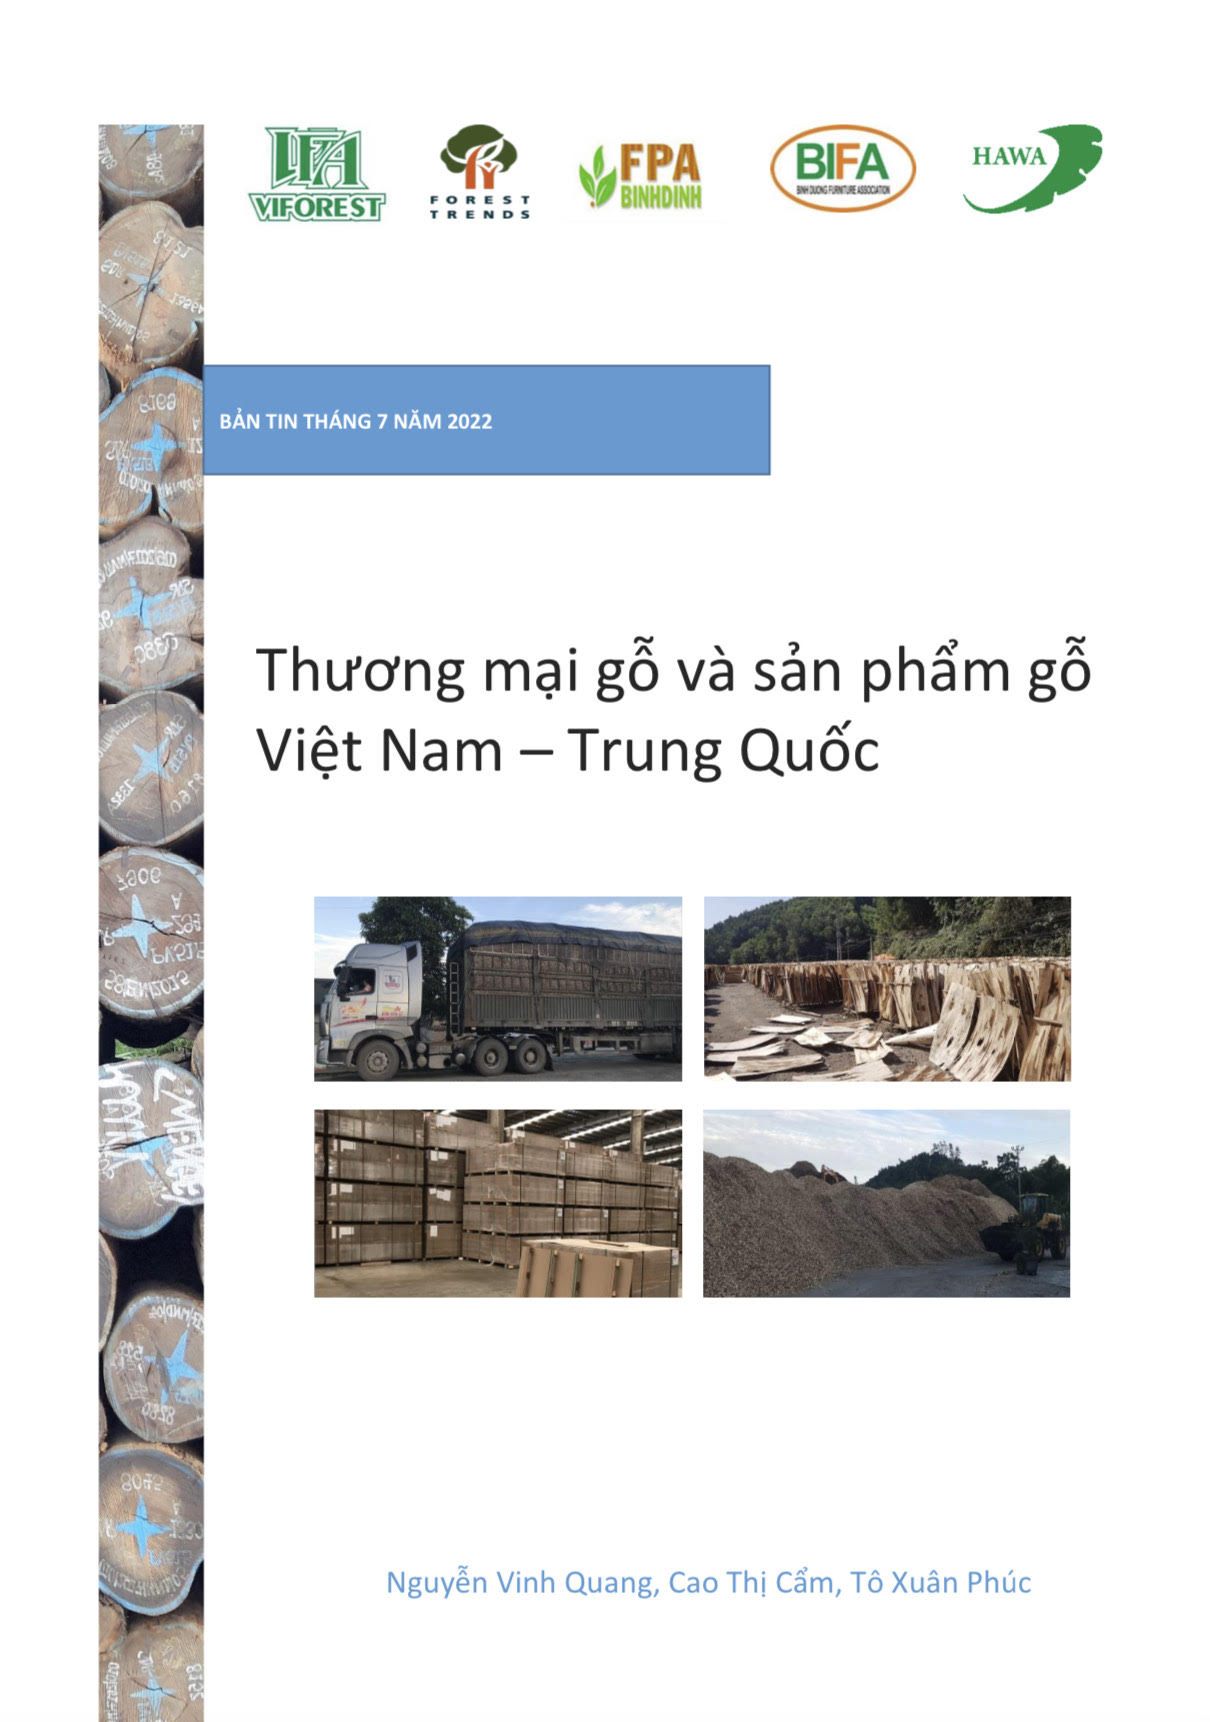 Thương mại gỗ và sản phẩm gỗ Việt Nam - Trung Quốc